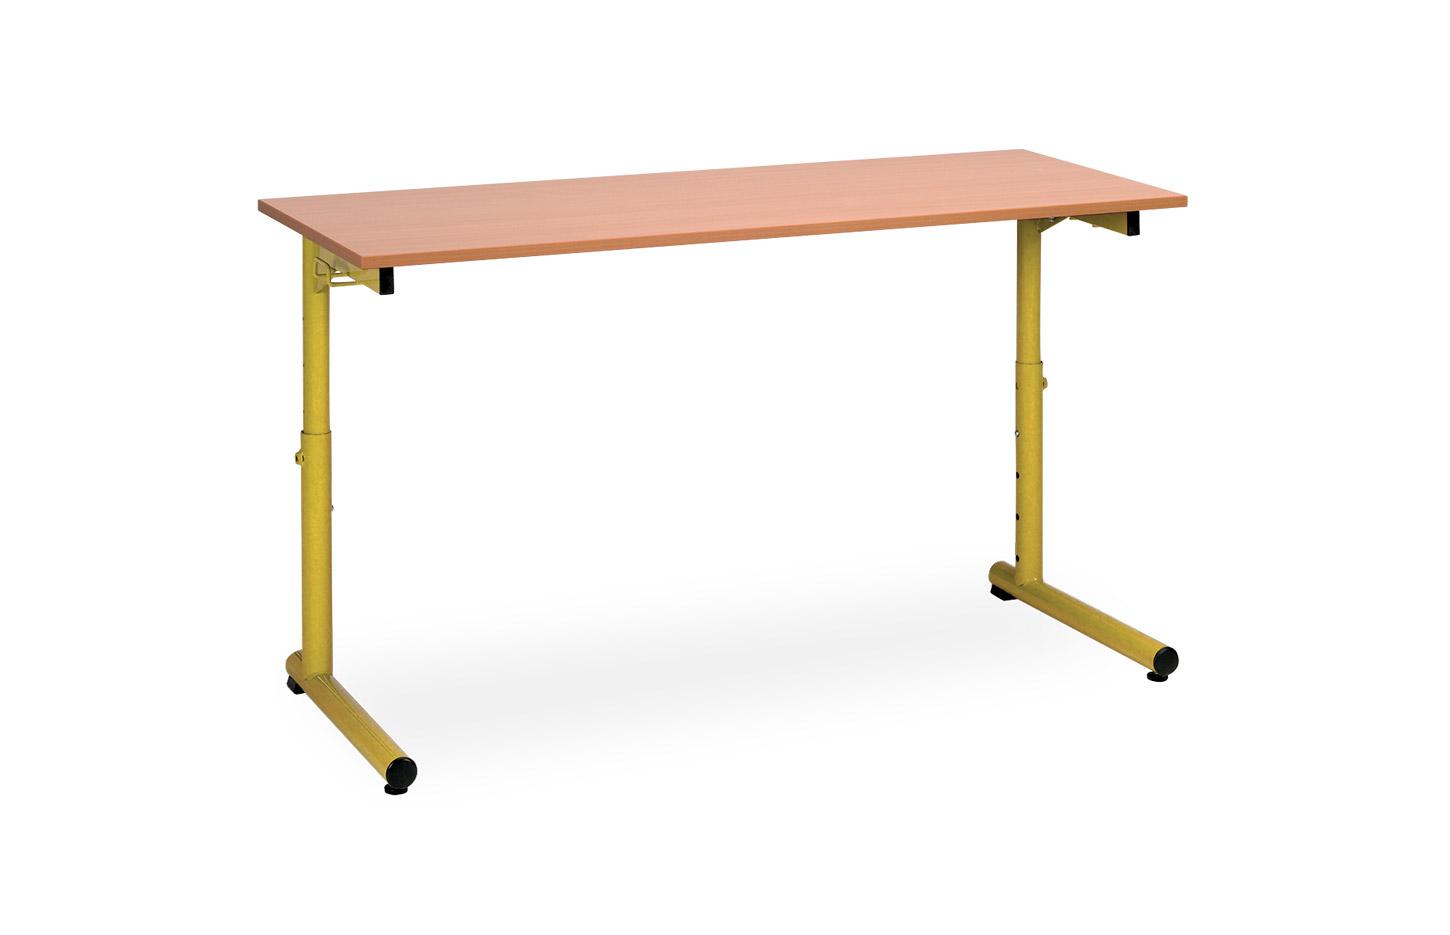 Tables scolaires hauteur fixe ou réglable, Fabrication Française, gamme Sumac, mobilier de bureau France Bureau